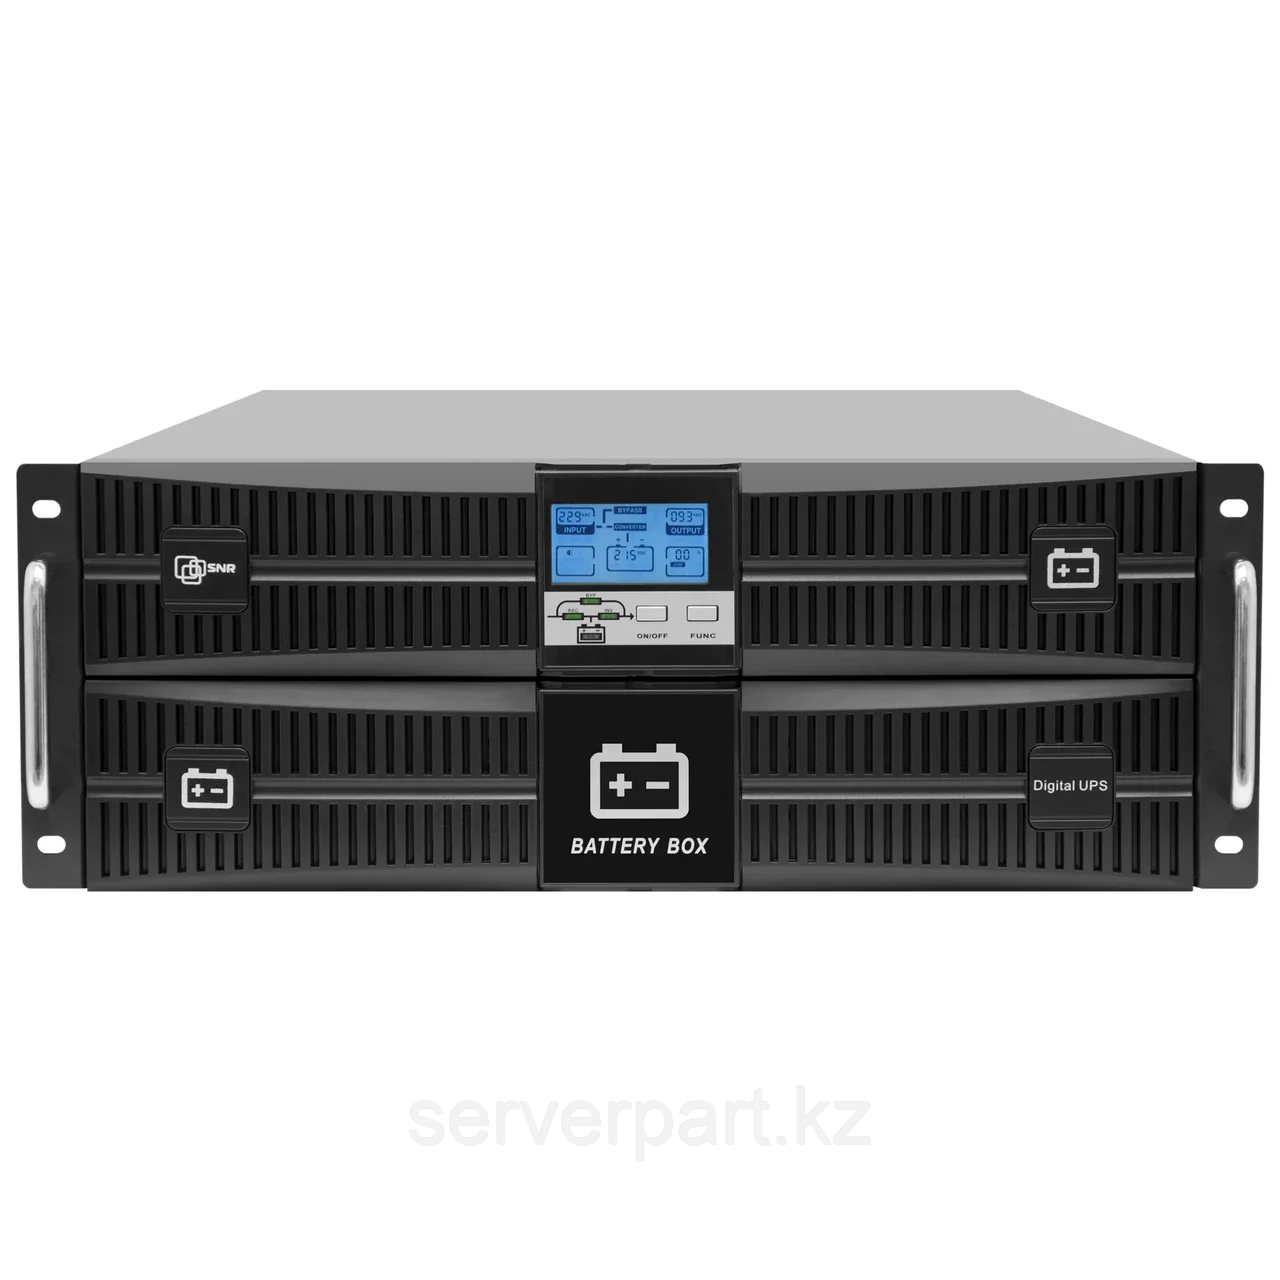 ИБП SNR On-line , Rackmount 4U, серии Intelligent 10000 Ва / 10 000 Вт, клеммный терминал, SNMP слот